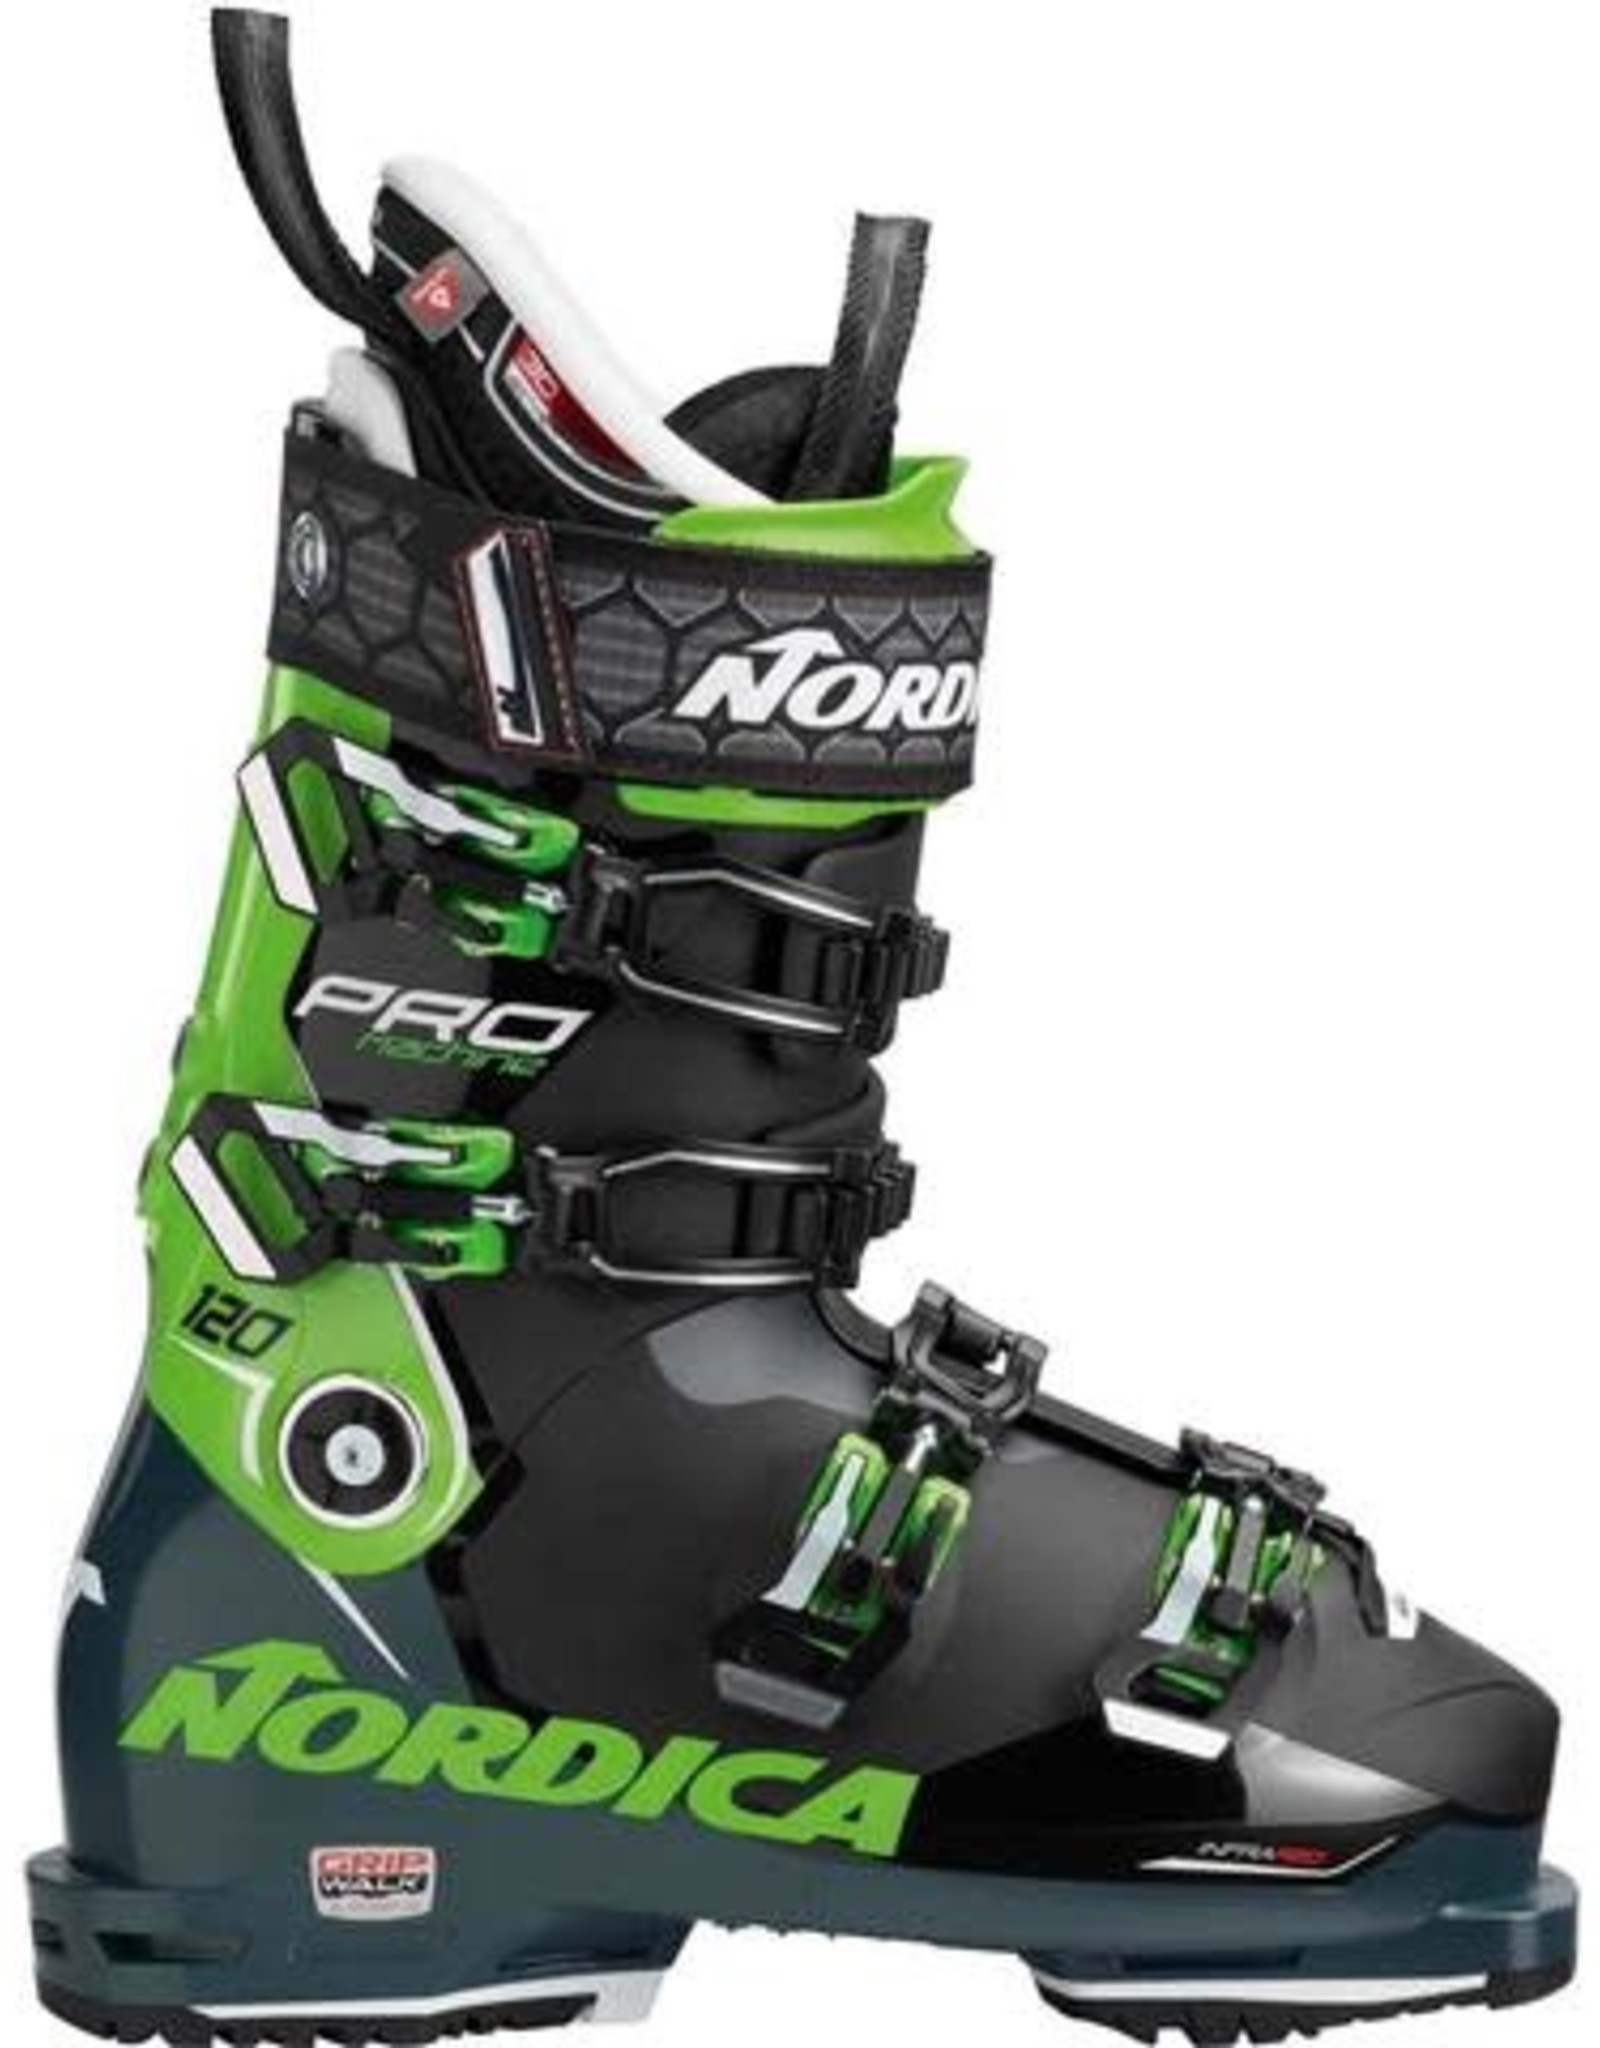 NORDICA NORDICA Ski Boots PROMACHINE 120 (GW) (19/20)